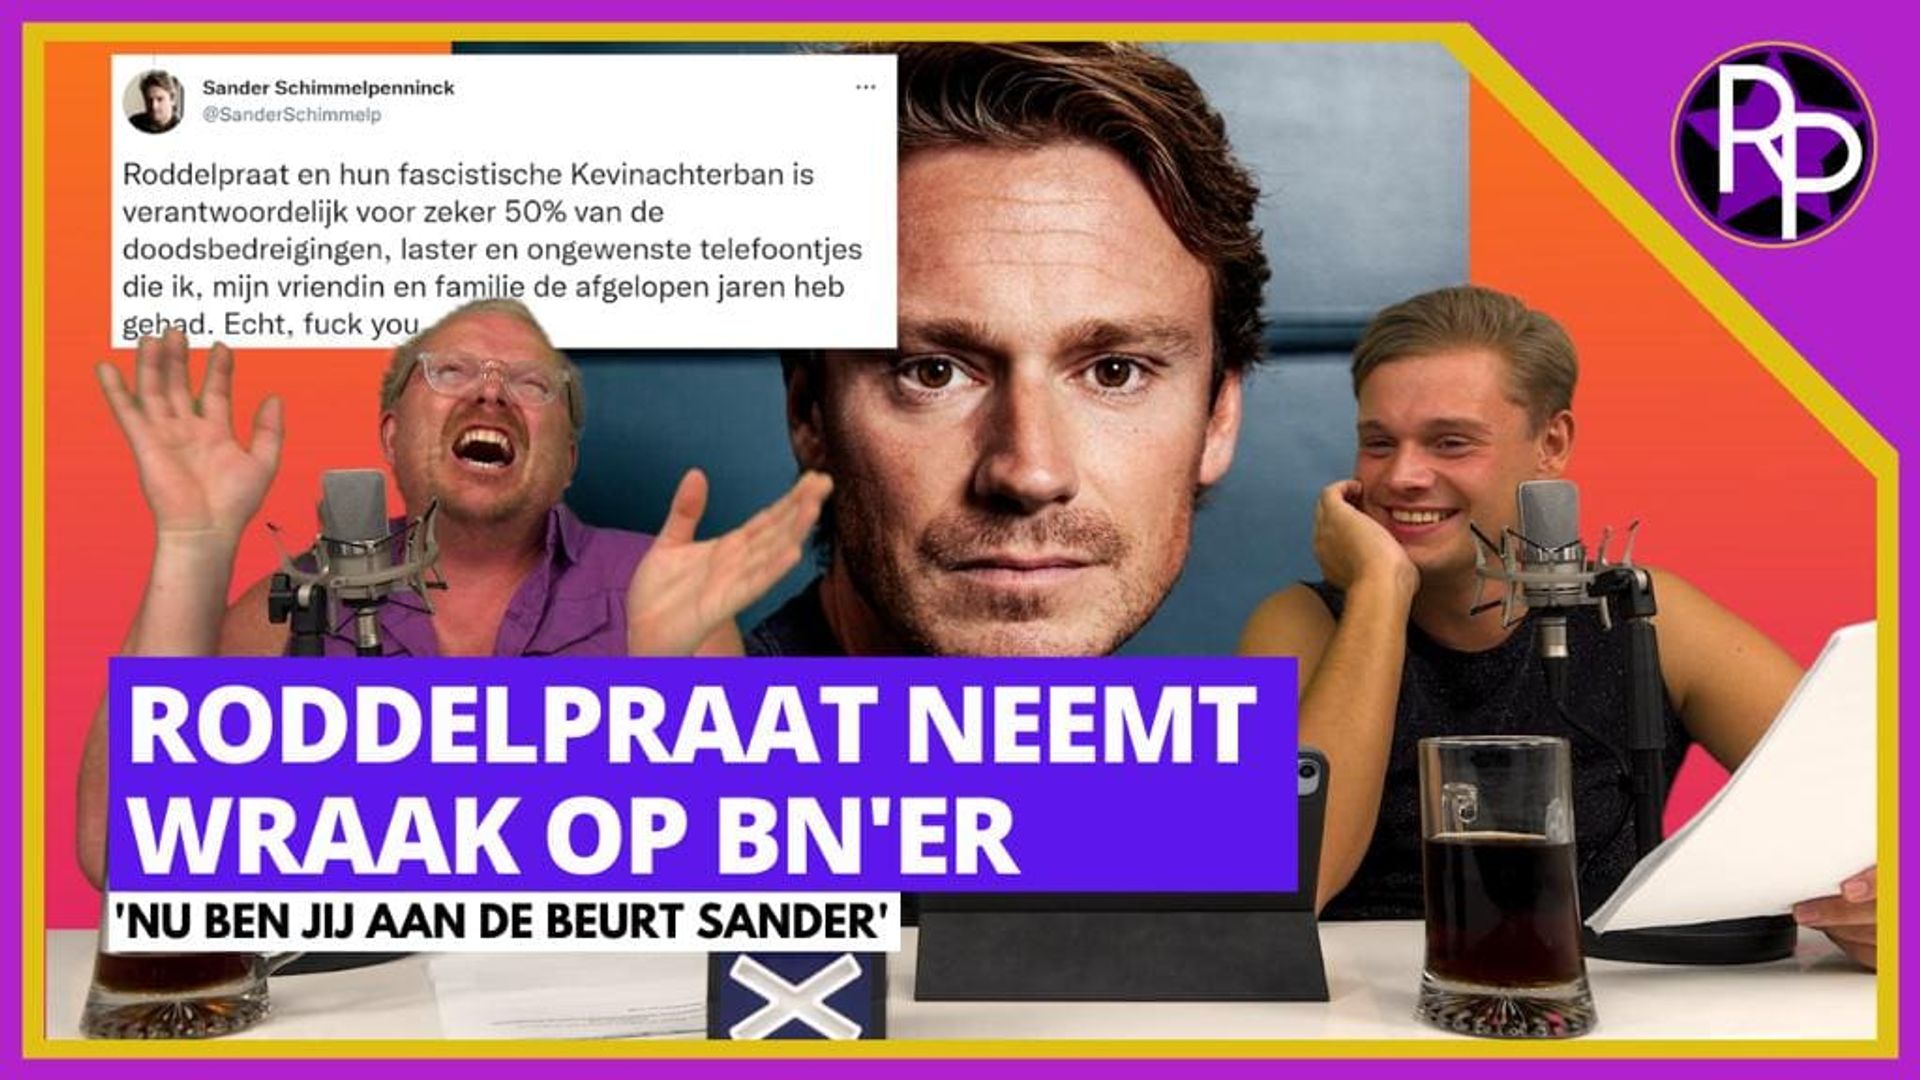 RoddelPraat neemt wraak op Sander Schimmelpenninck